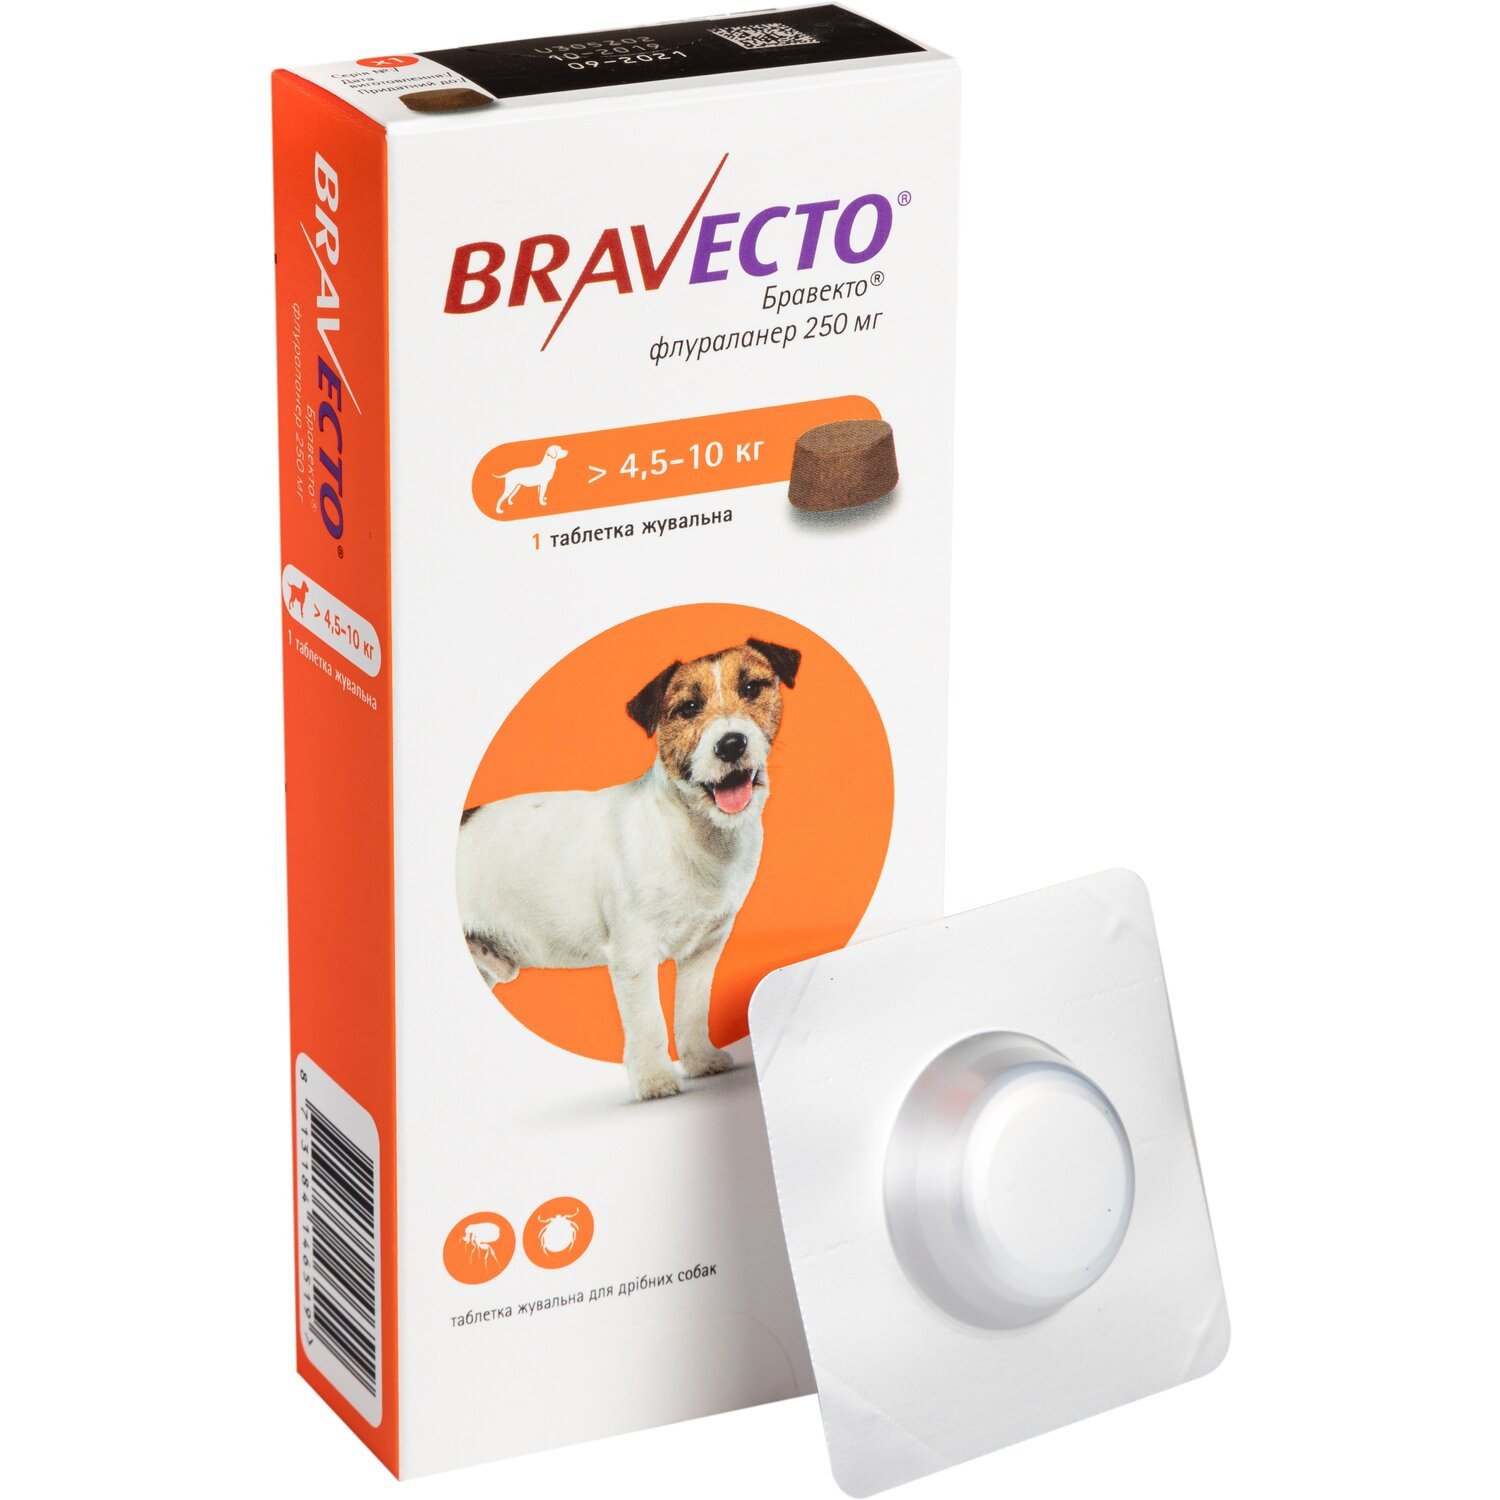 Жевательная таблетка Bravecto (Бравекто) от блох и клещей для собак 4.5-10 кг фото 